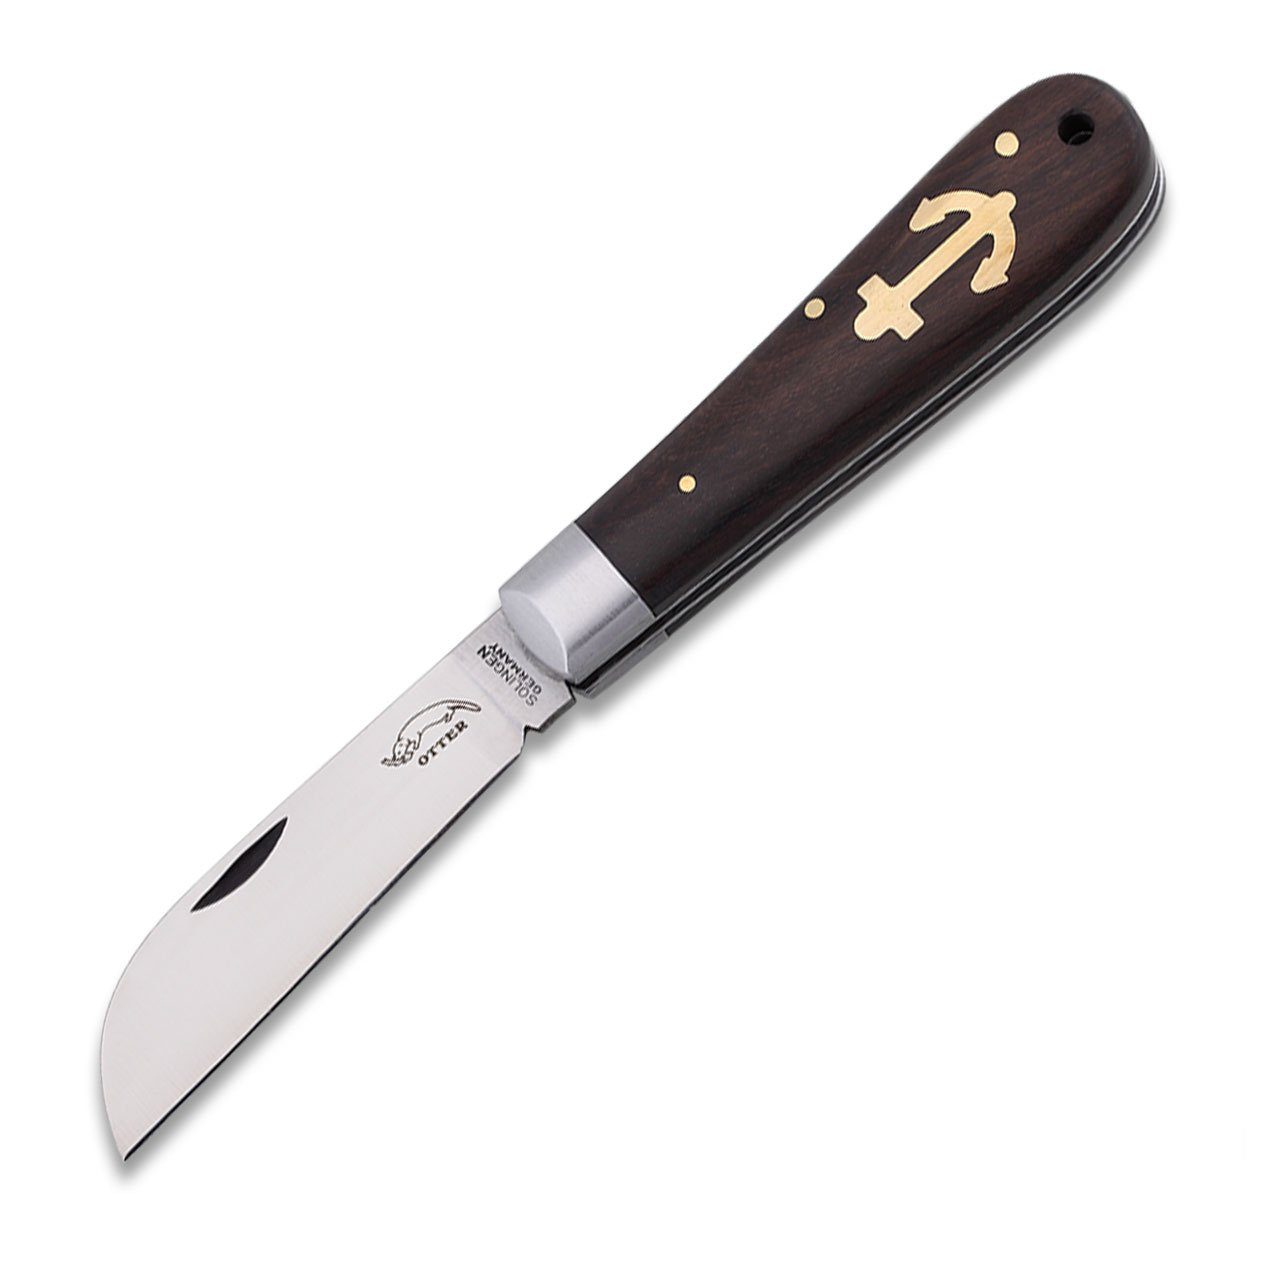 Otter Anker-Messer rostfrei, Slipjoint groß Messer Taschenmesser Grenadill nicht Carbonstahlklinge,